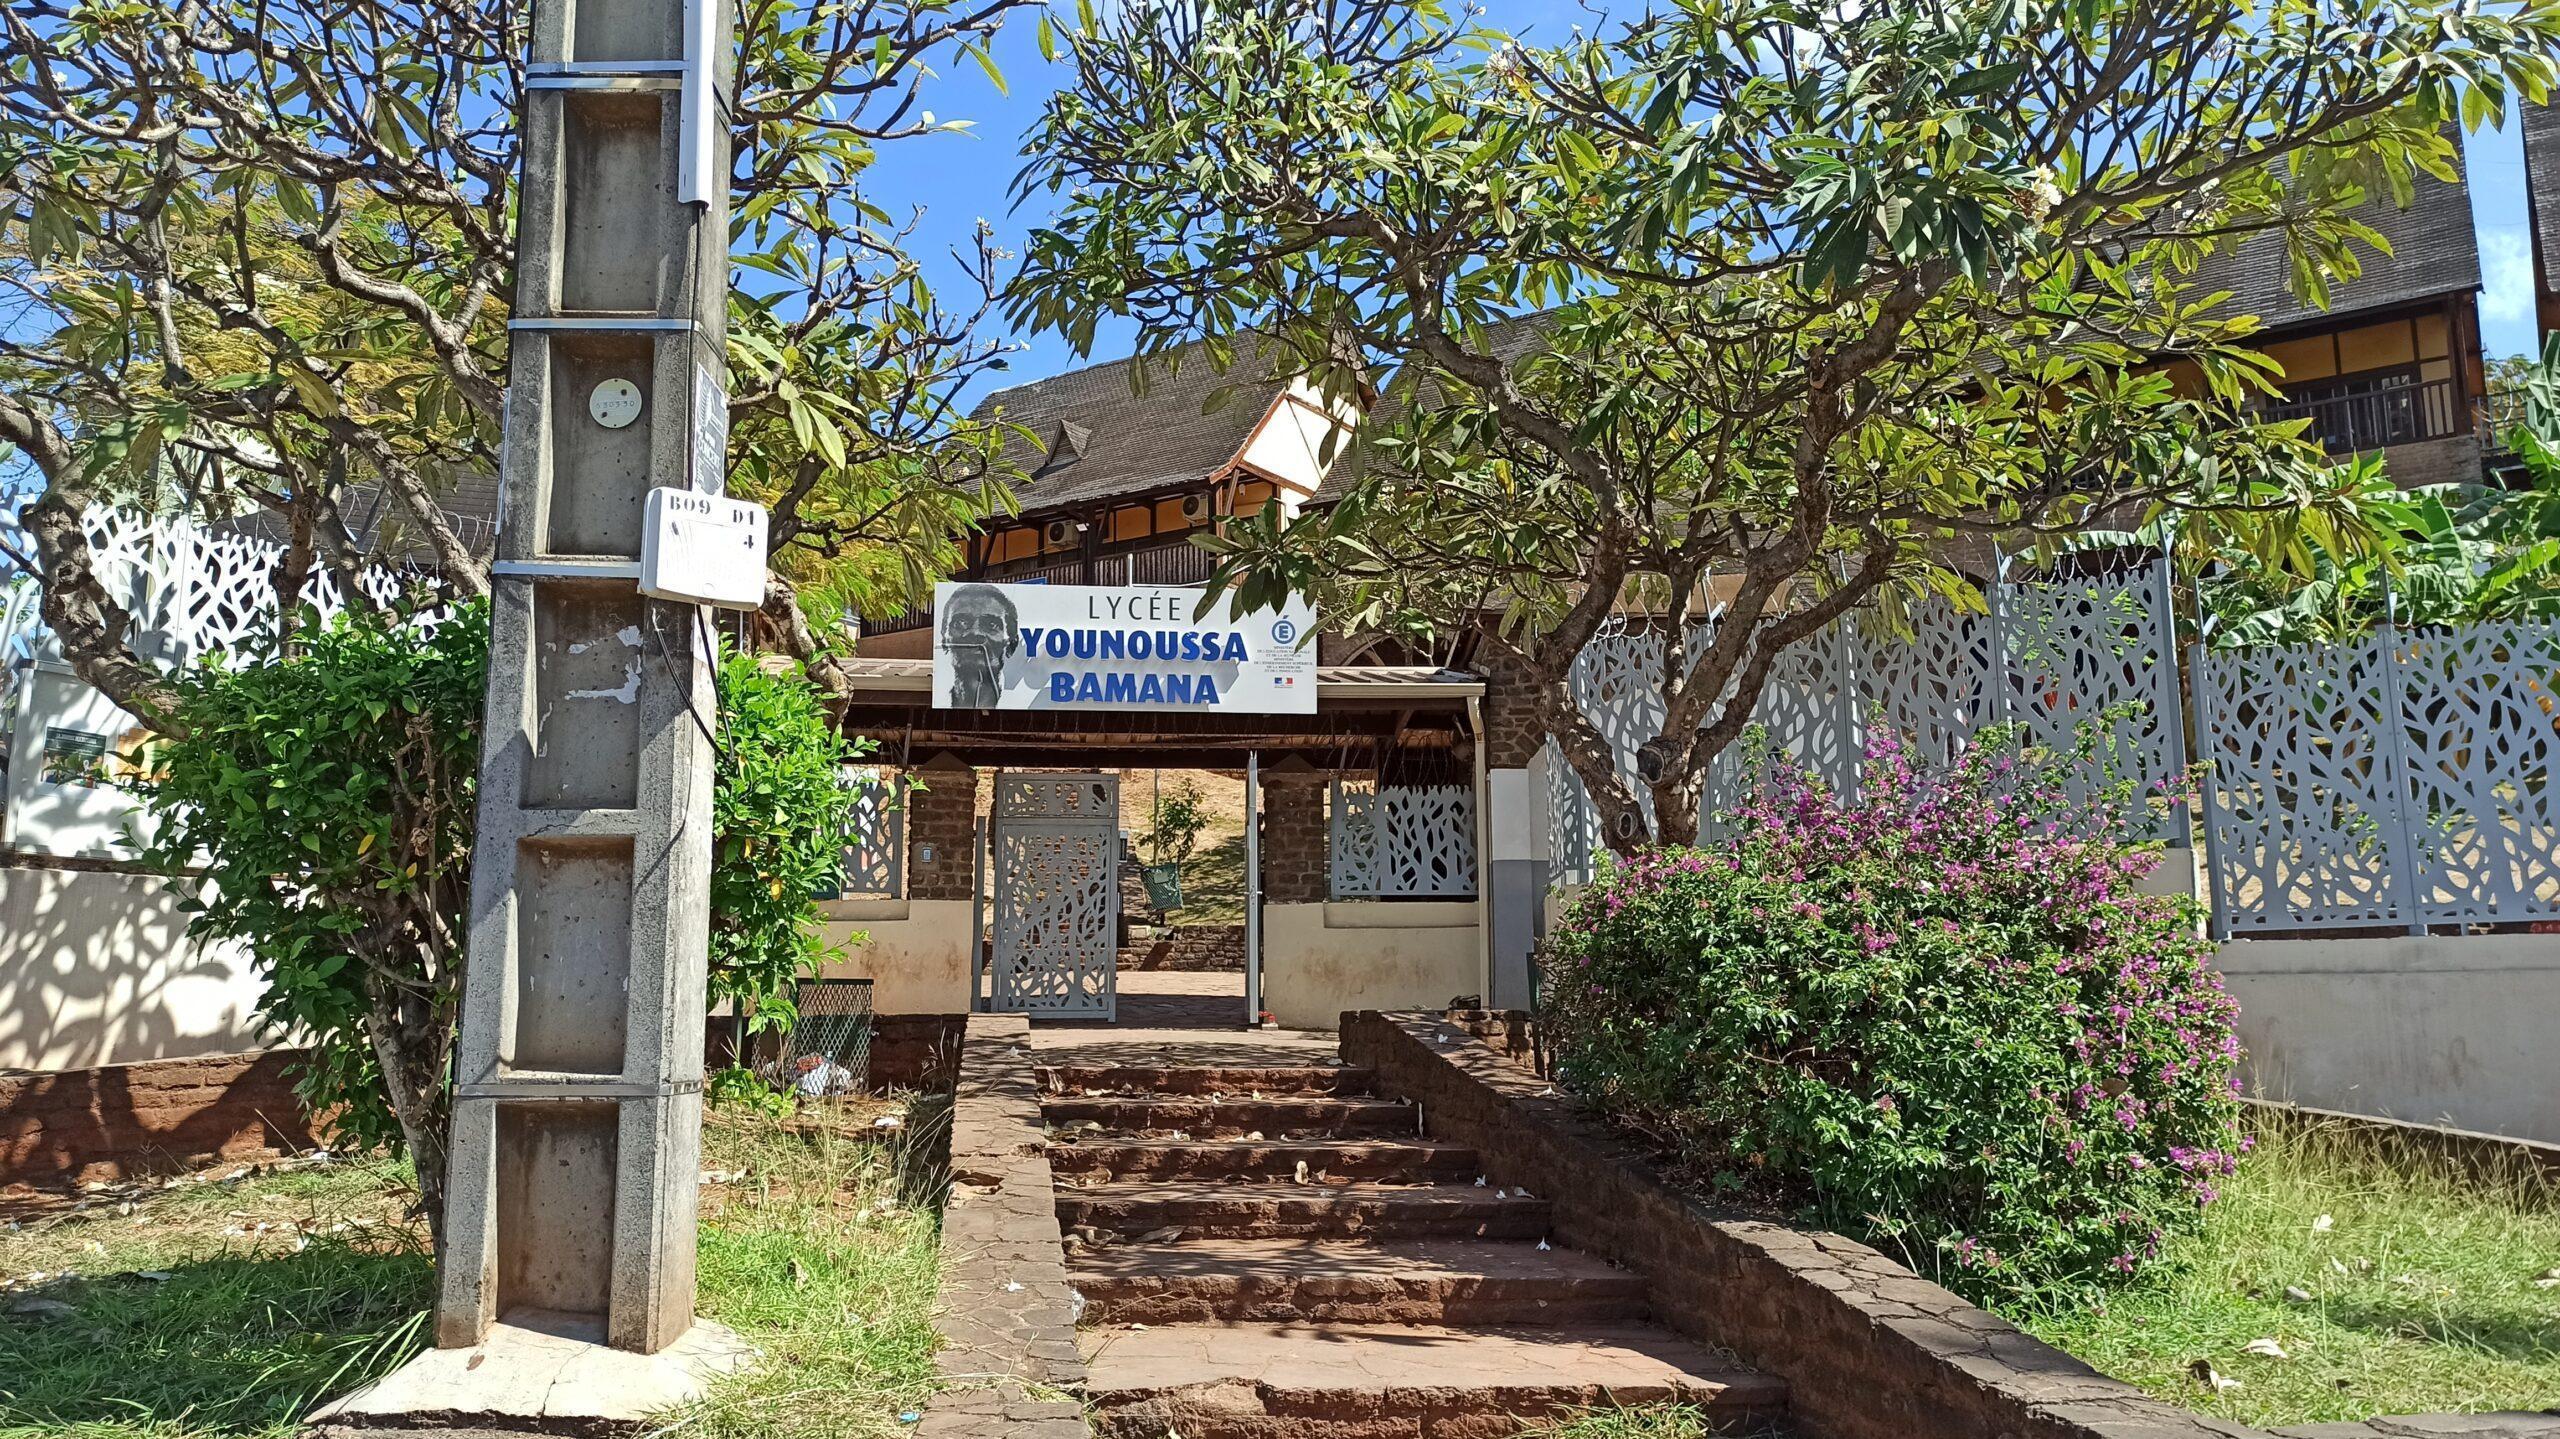 établissements scolaires fermeture Mayotte Perturbations dans les établissements scolaires de Mayotte à cause d'une eau non potable